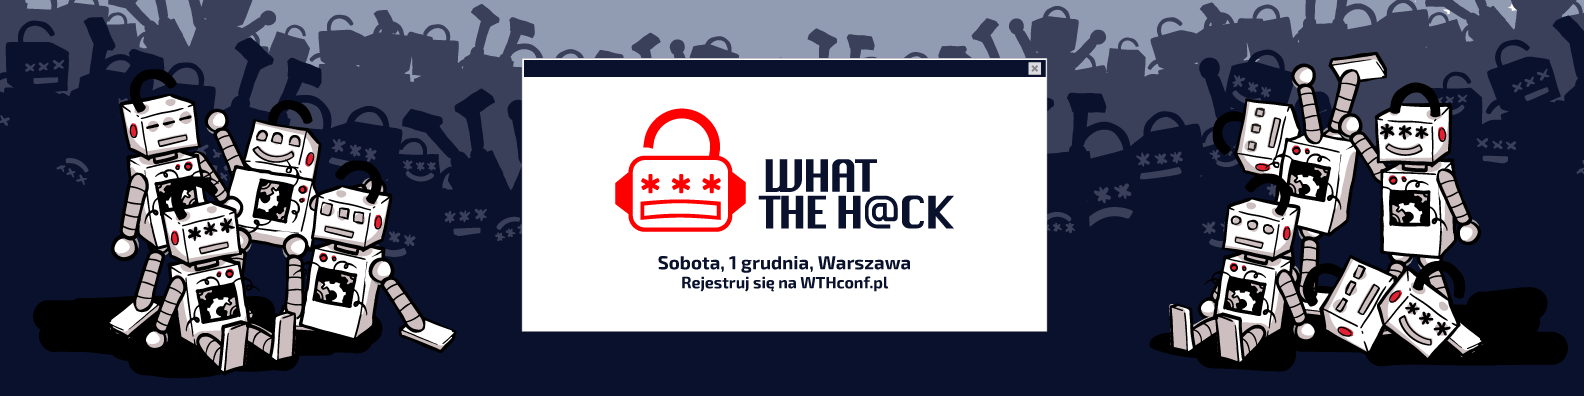 Logo konferencji What The Hack z napisem: Sobota, 1 grudnia, Warszawa; Rejestruj się na WTHconf.pl